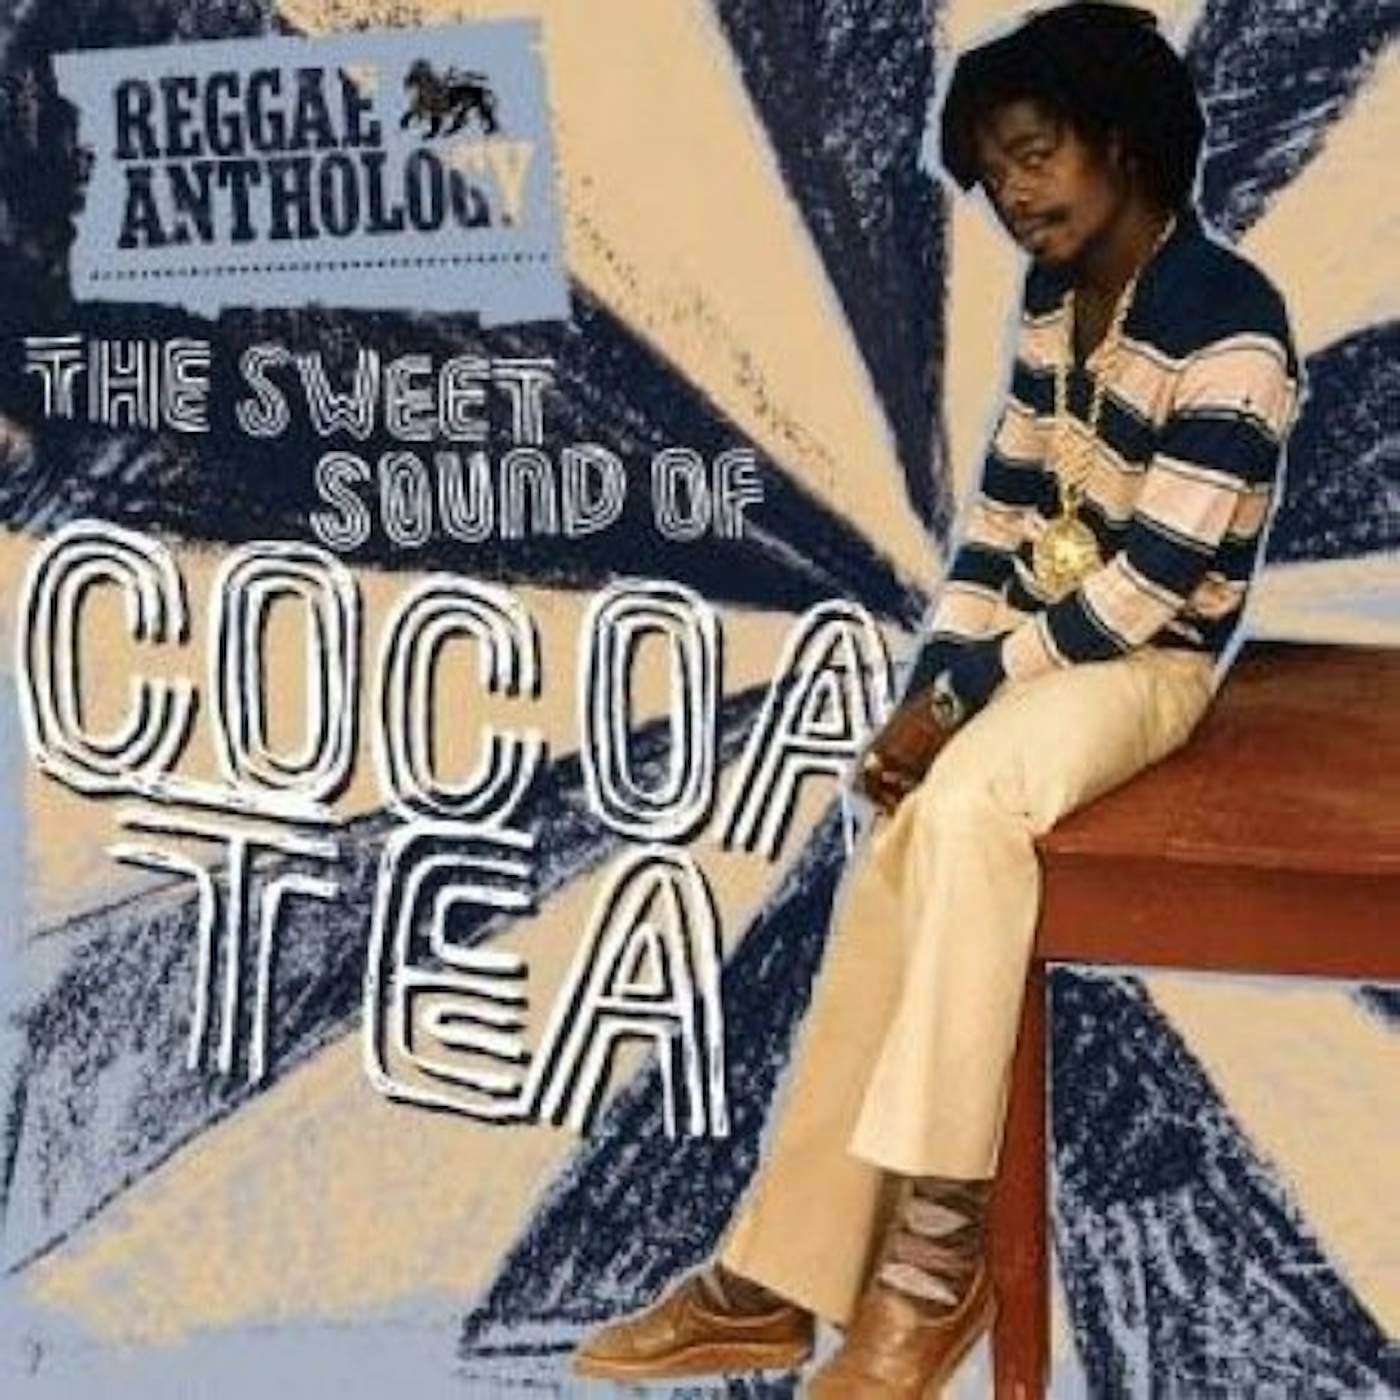 SWEET SOUND OF COCOA TEA Vinyl Record